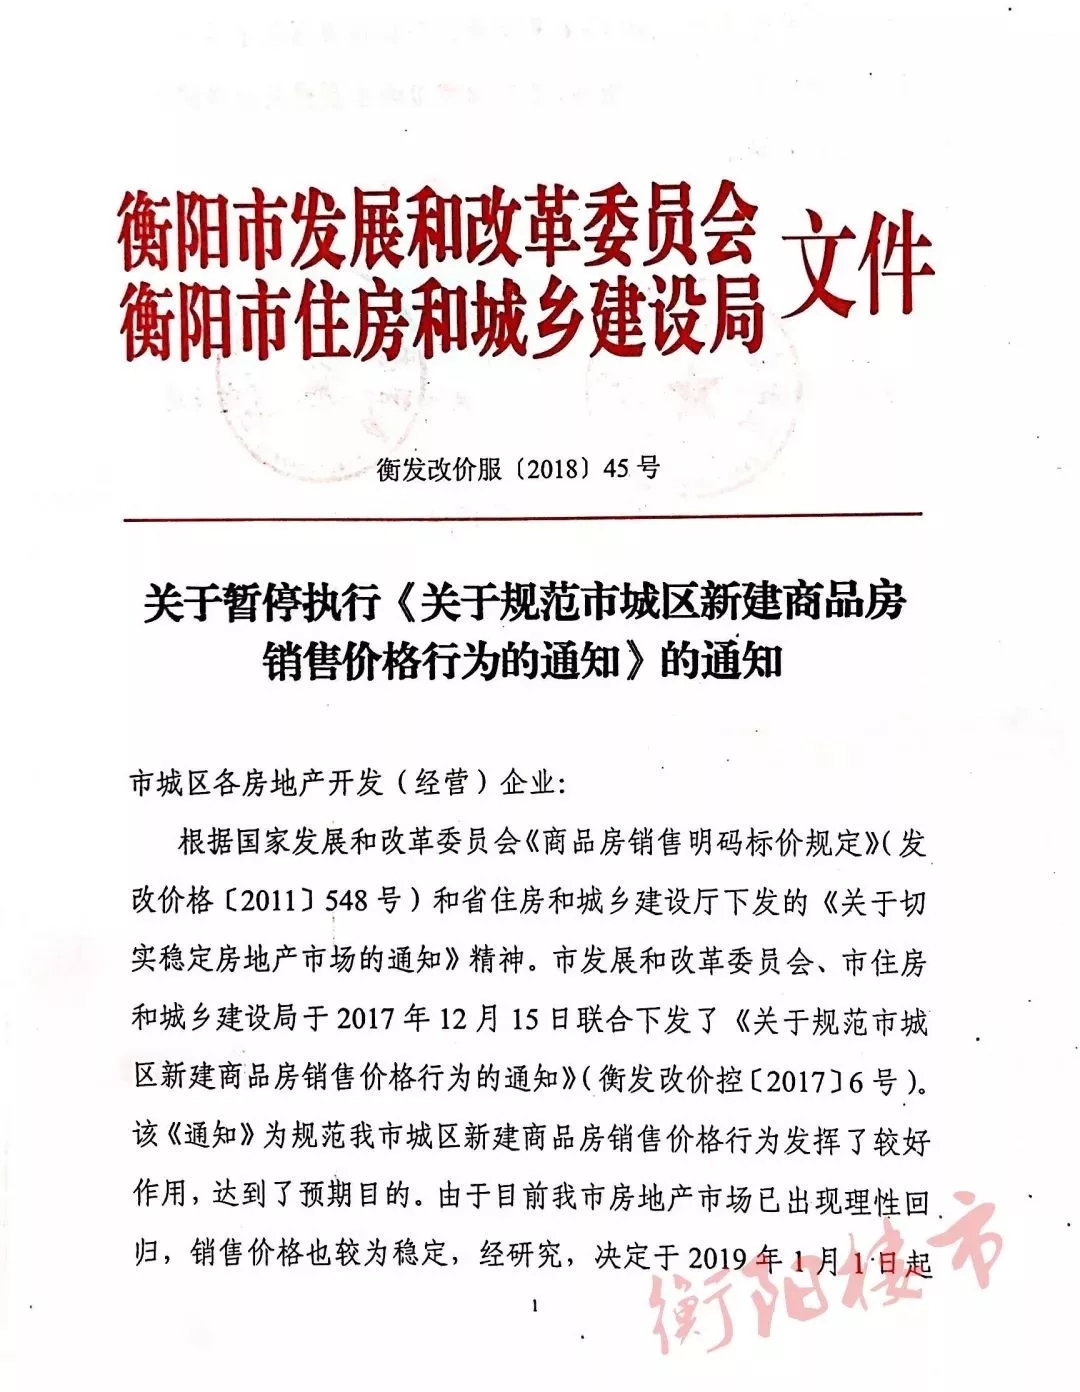 湖南衡阳暂停商品房限价规定:市场已理性回归